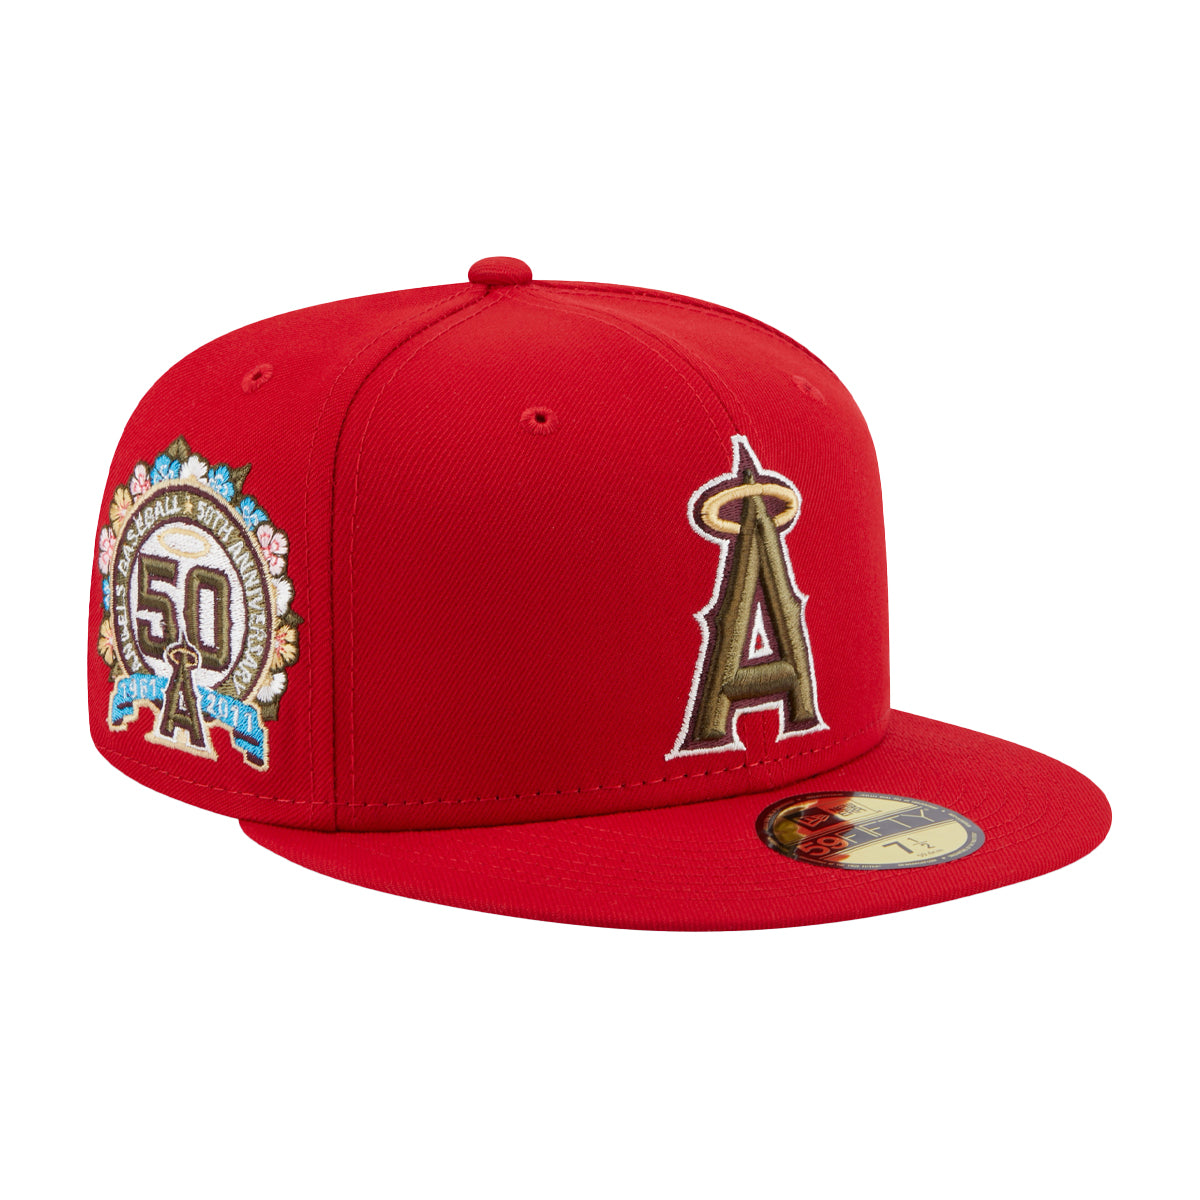 New Era Los Angeles Anaheim Angels Genuine Merchandise 59Fifty 7 1/2